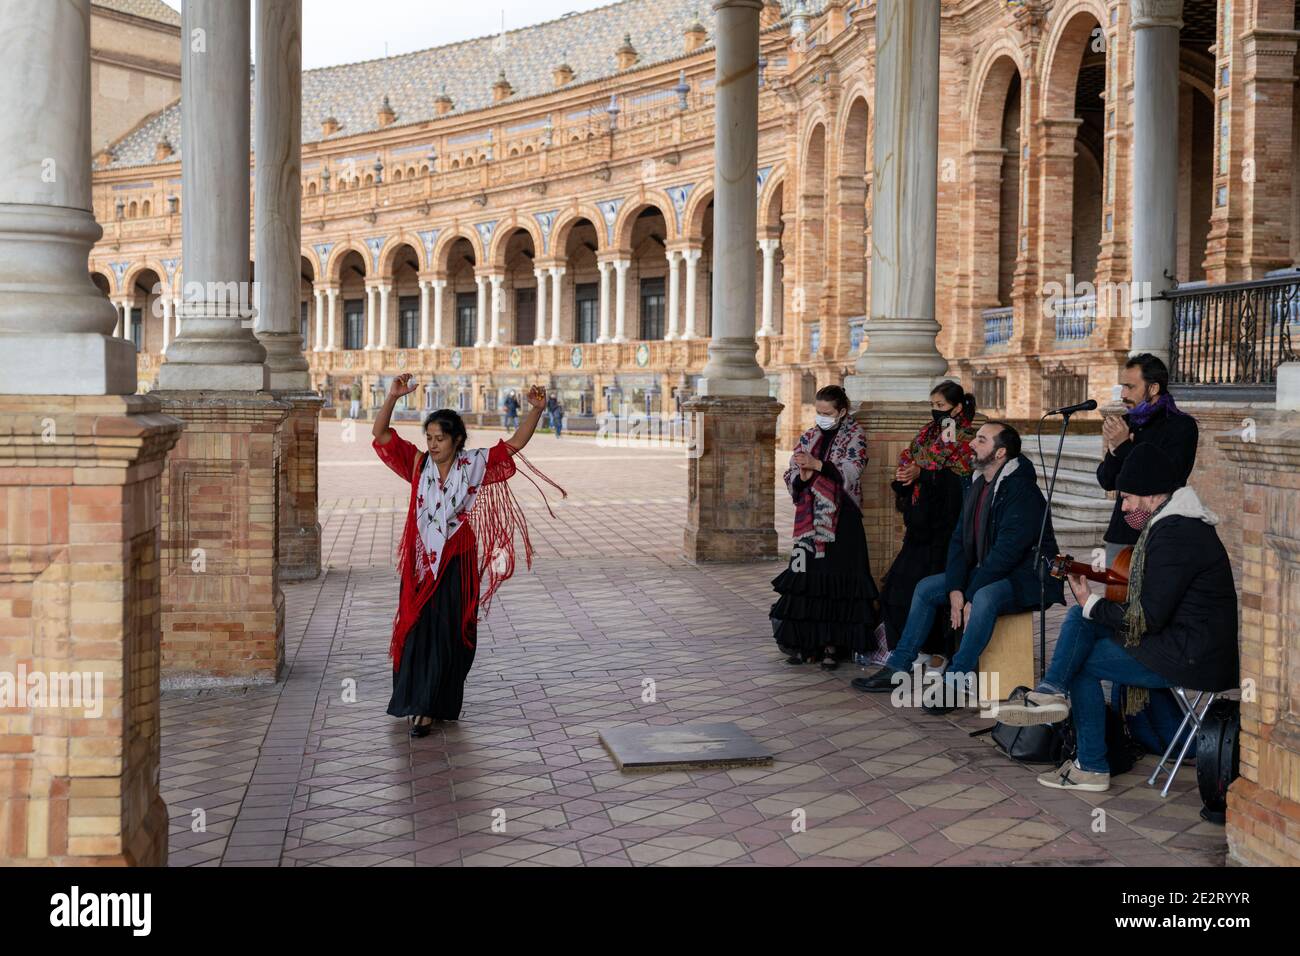 Séville, Espagne - 10 janvier 2021 : groupe de musique flamenco et danseurs se produisent sur la Plaza de Espana à Séville à l'époque du coronavirus Banque D'Images